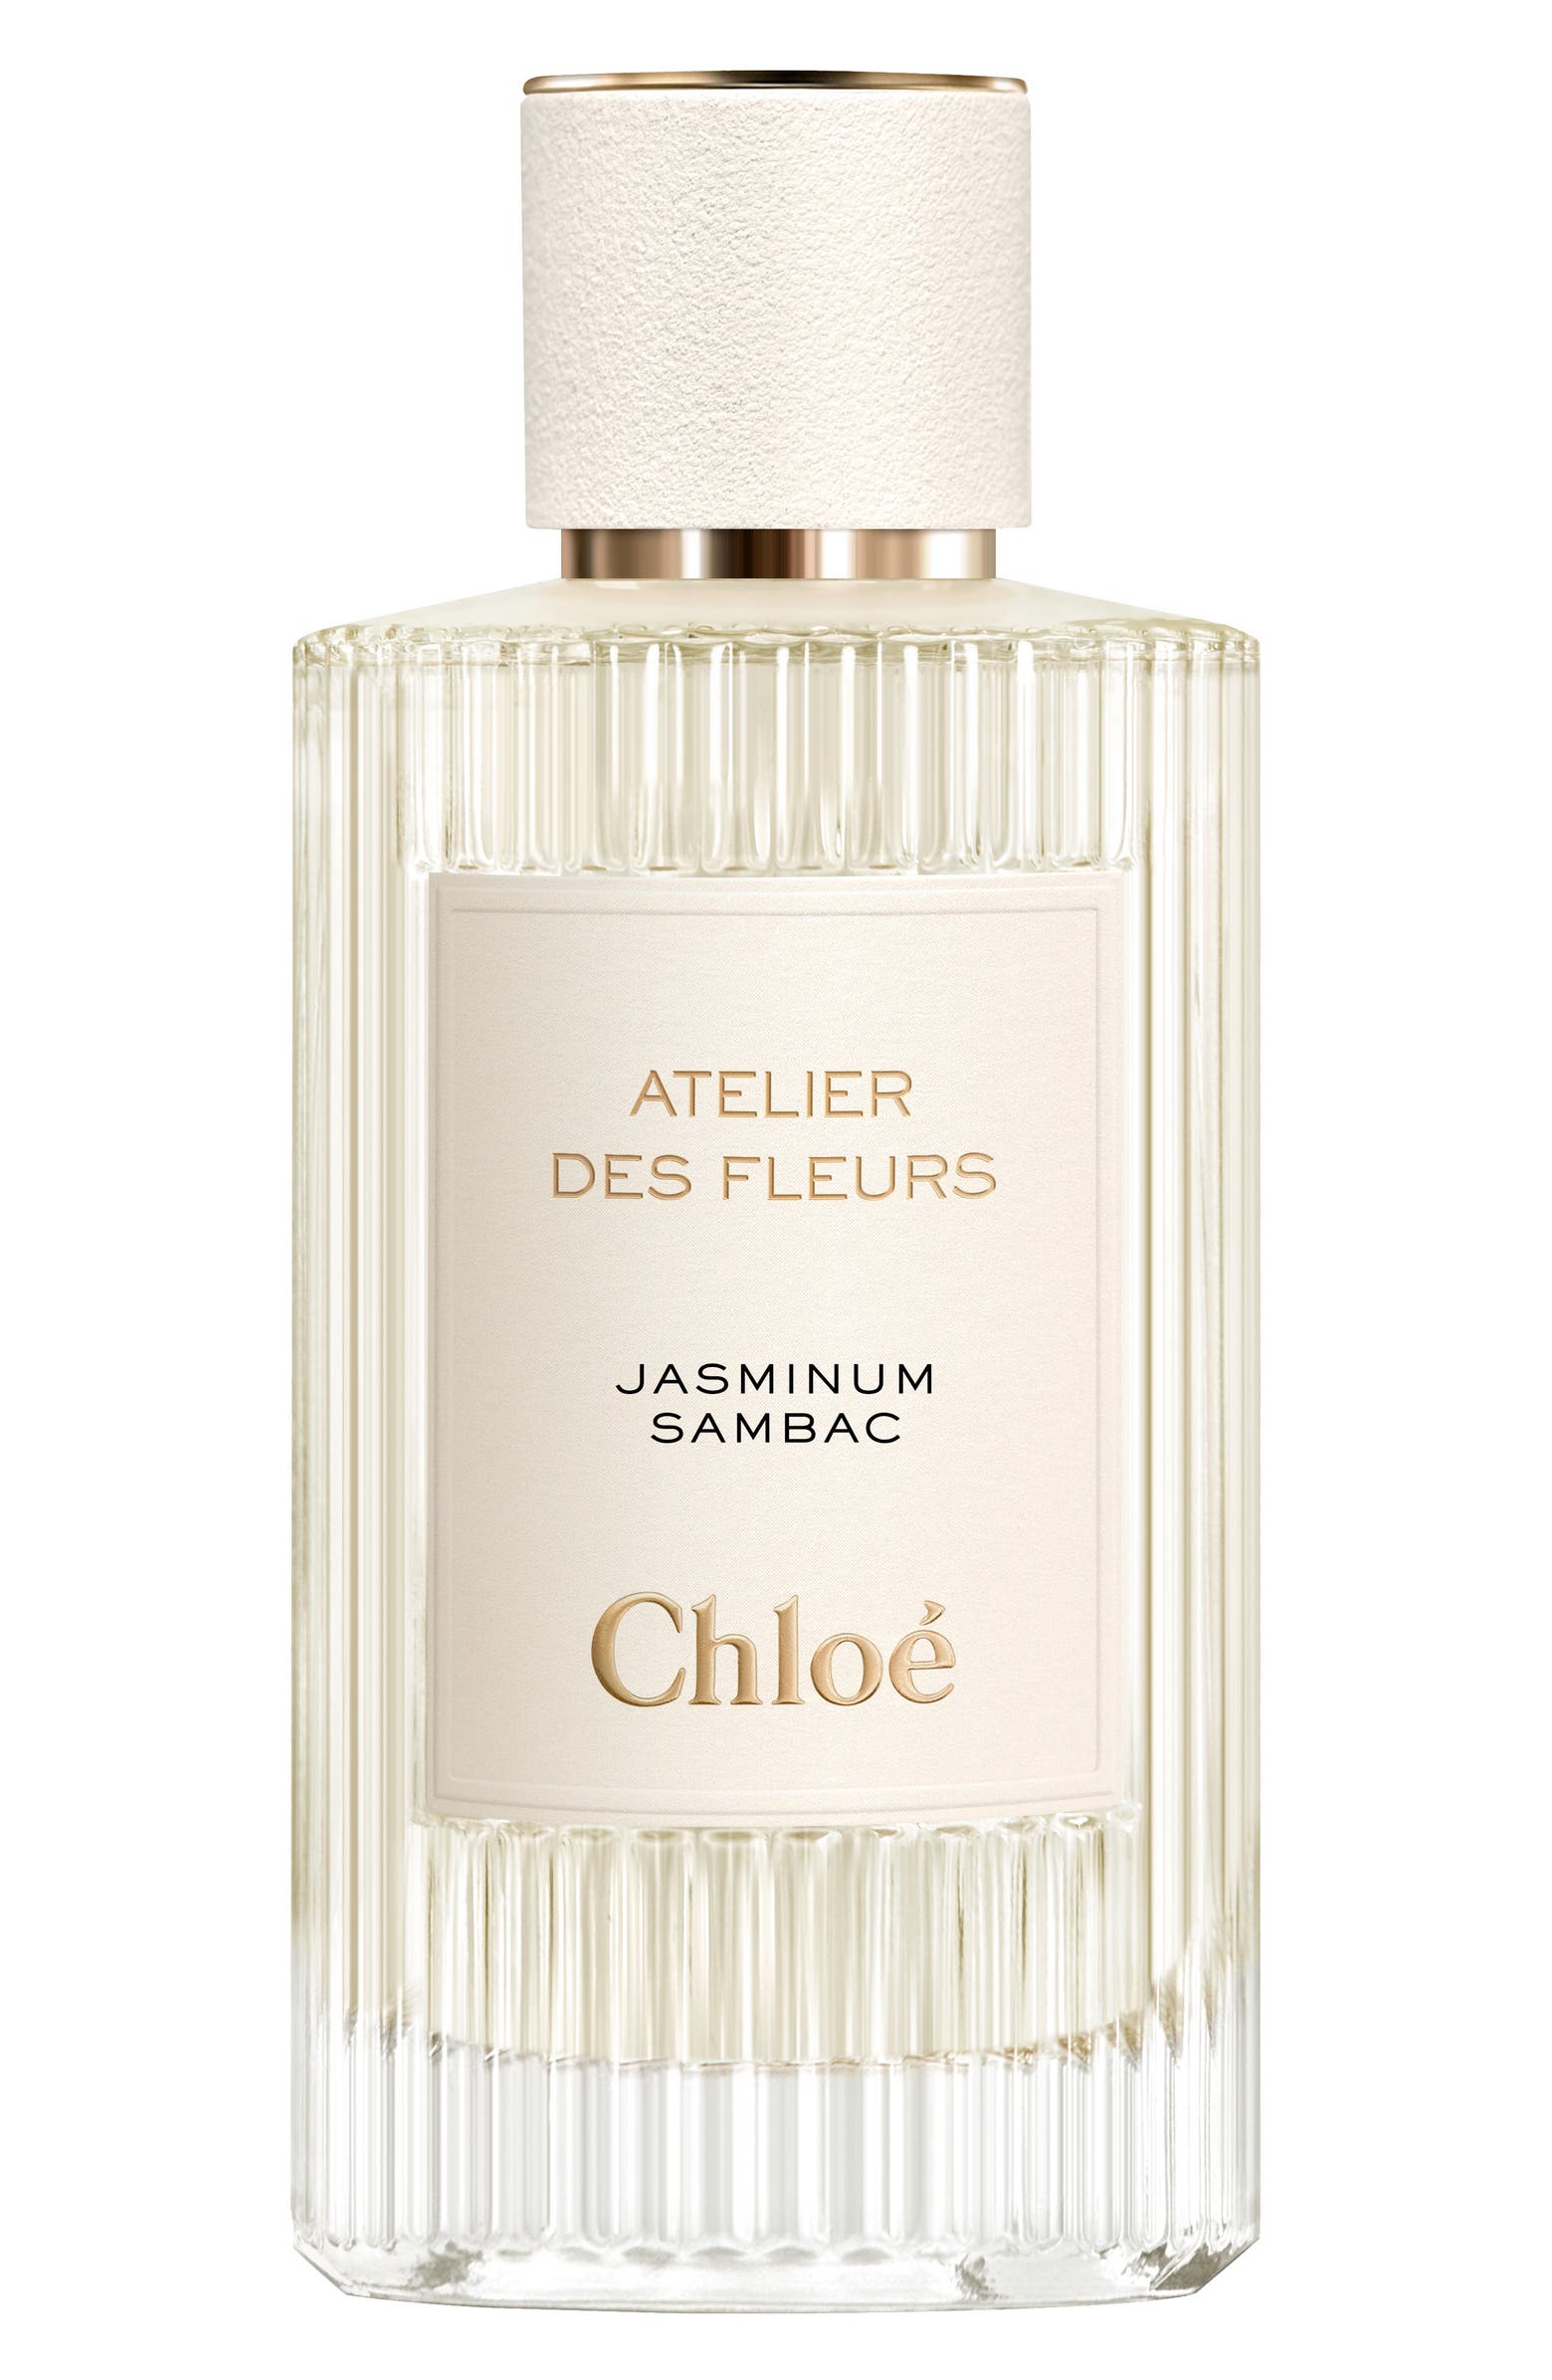 Chloé Atelier des Fleurs Jasminum Sambac Eau de Parfum (Nordstrom